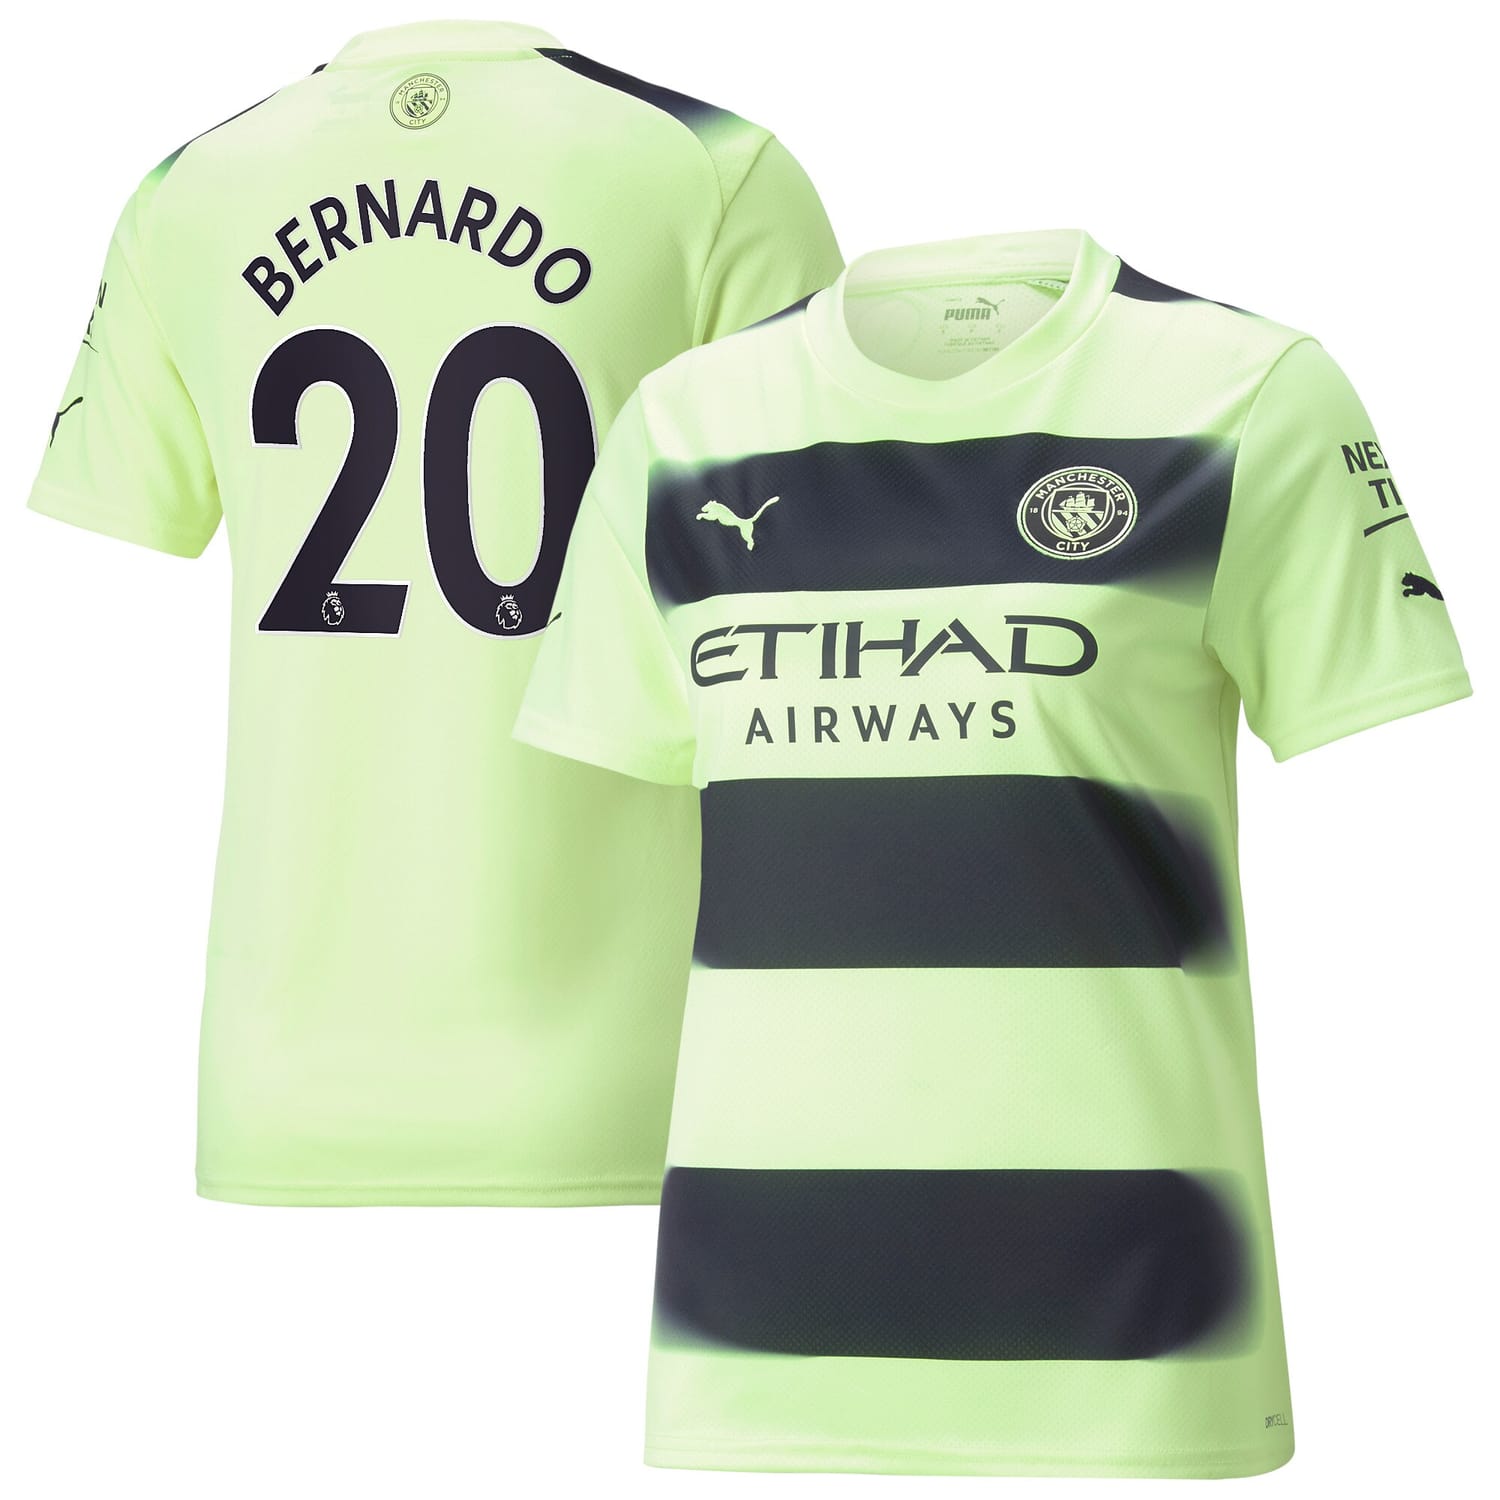 Premier League Manchester City Third Jersey Shirt 2022-23 player Bernardo Silva 20 printing for Women